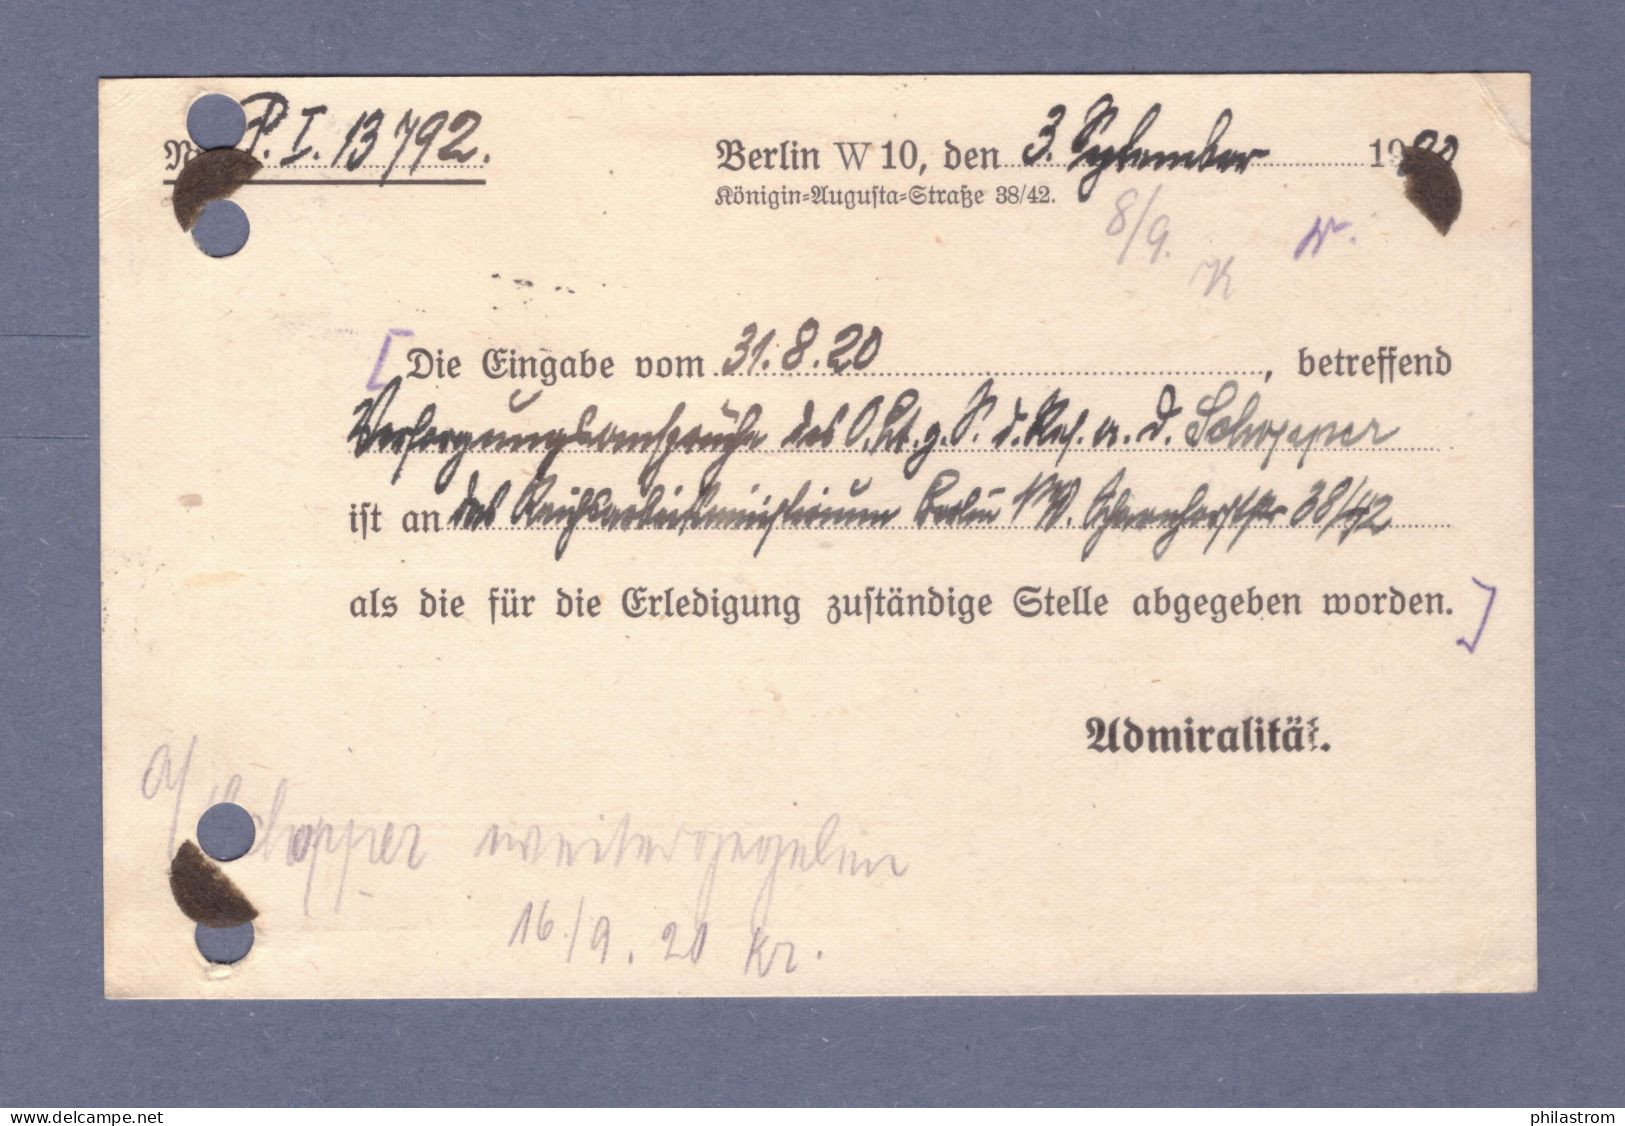 Weimar DIENST Postkarte- MARINESACHE - Reichs-Marine Admiralität - Mi 20 - Berlin SW 7.9.20 --> Hamburg (CG13110-234) - Dienstmarken